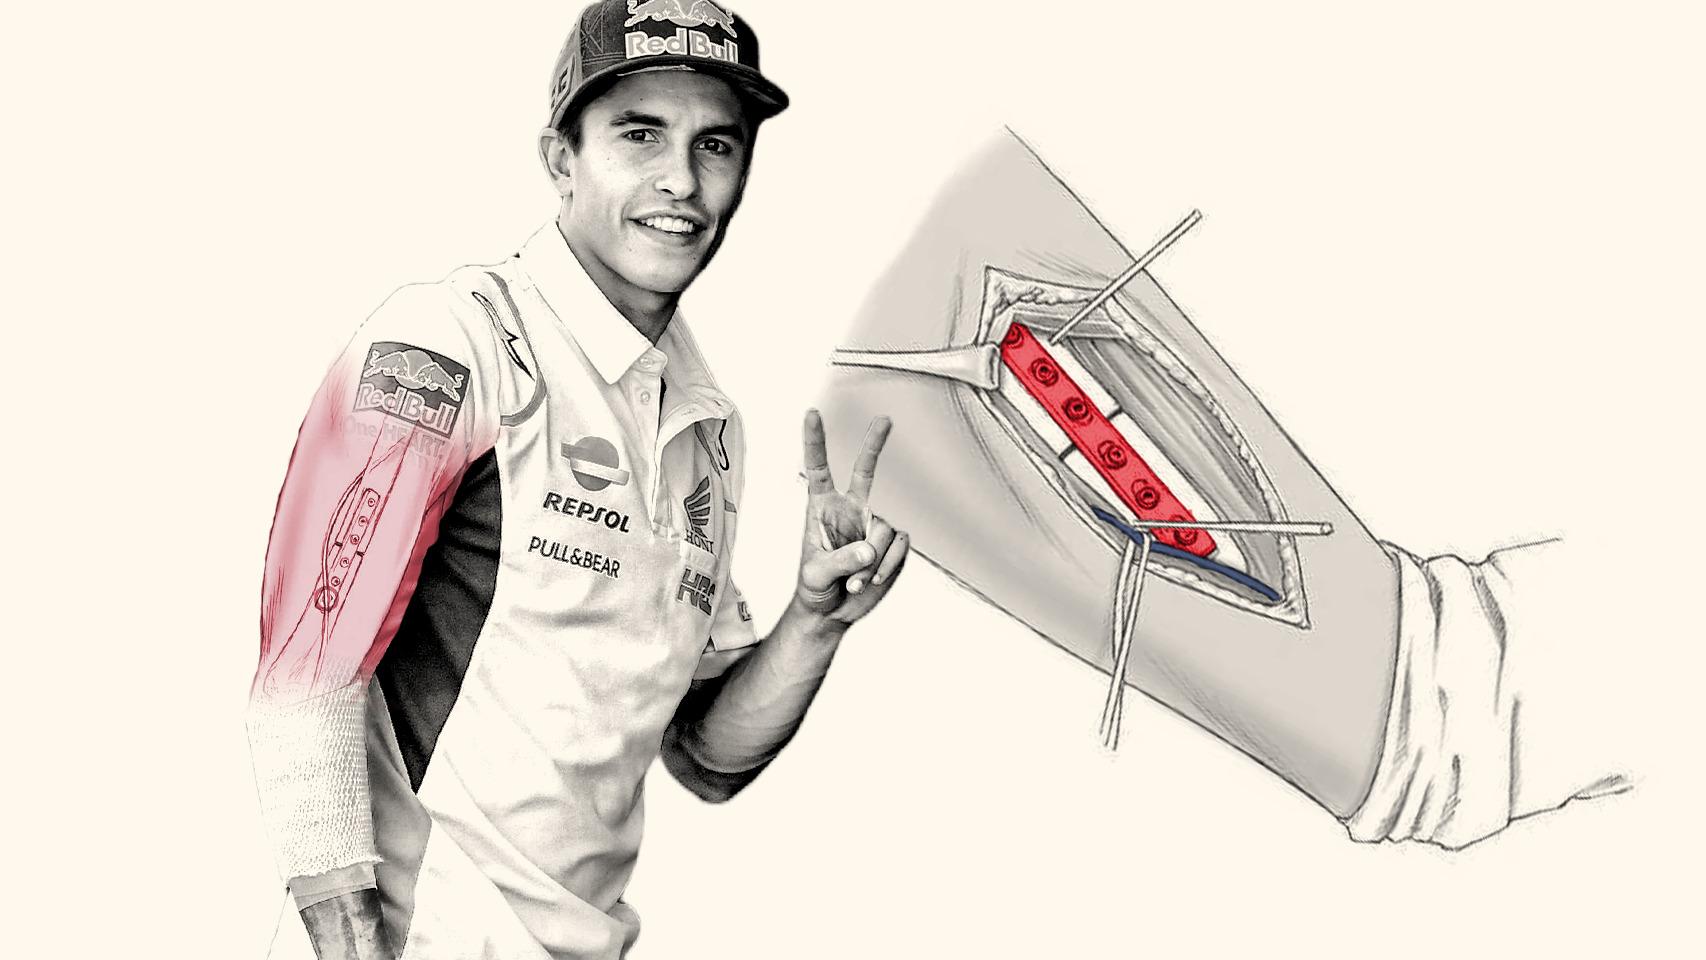 MotoGP: Marc Márquez se pronuncia sobre cómo está su brazo operado cuatro  veces